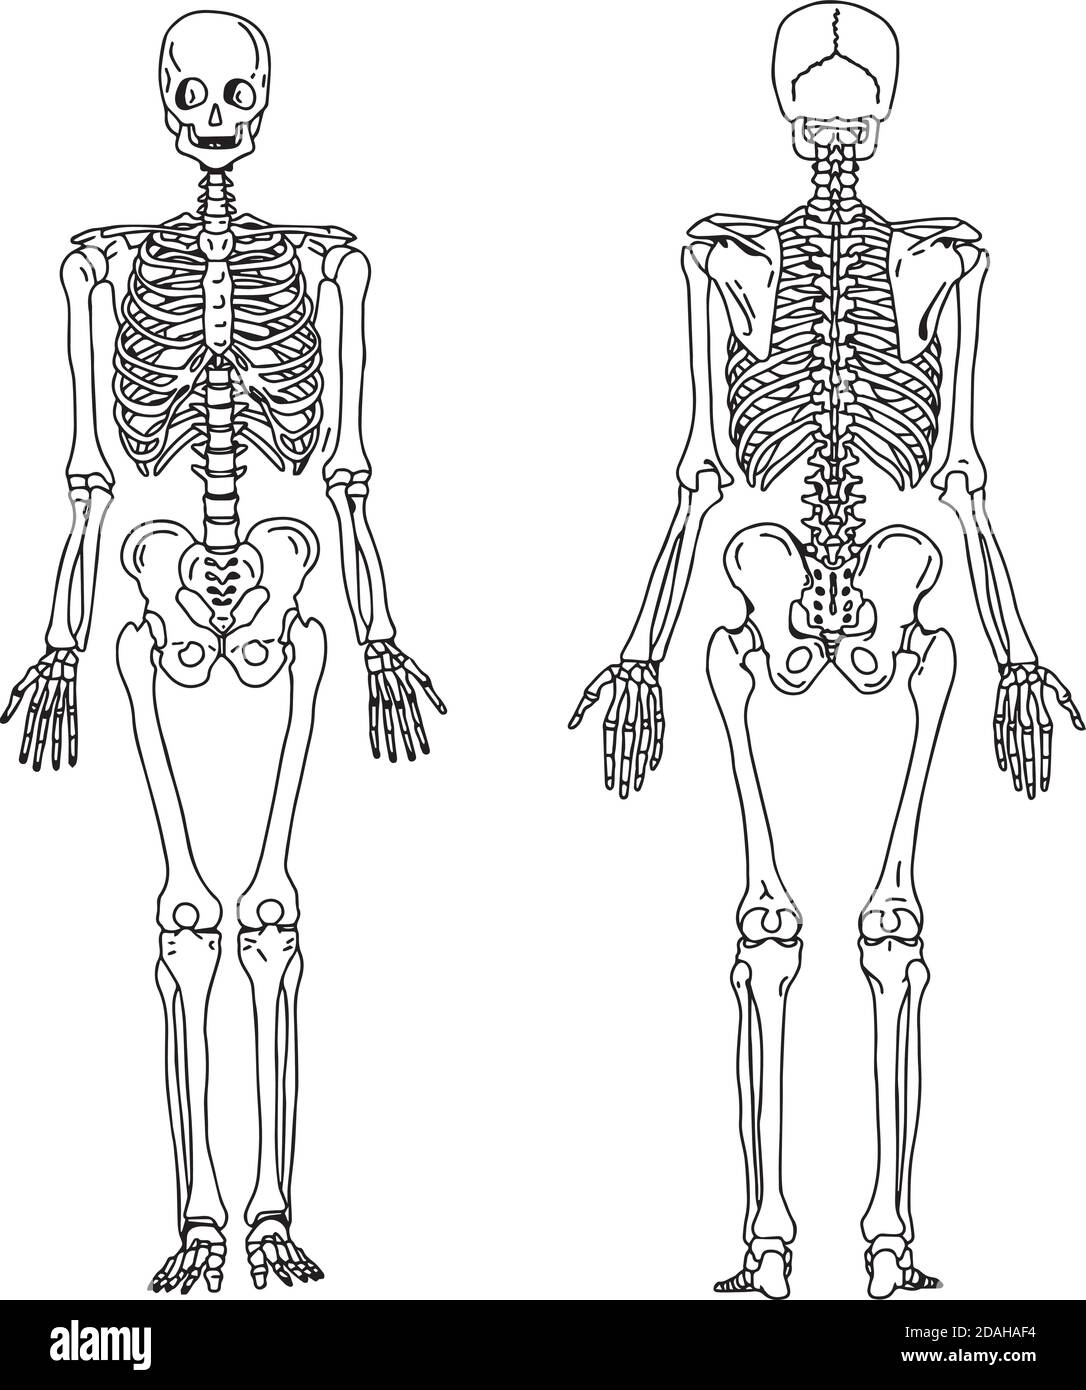 Illustration Vektor Hand zeichnen Kritzeleien des menschlichen Skeletts aus der hinteren und vorderen Ansicht, Anatomie des menschlichen knöchernen Systems Stock Vektor